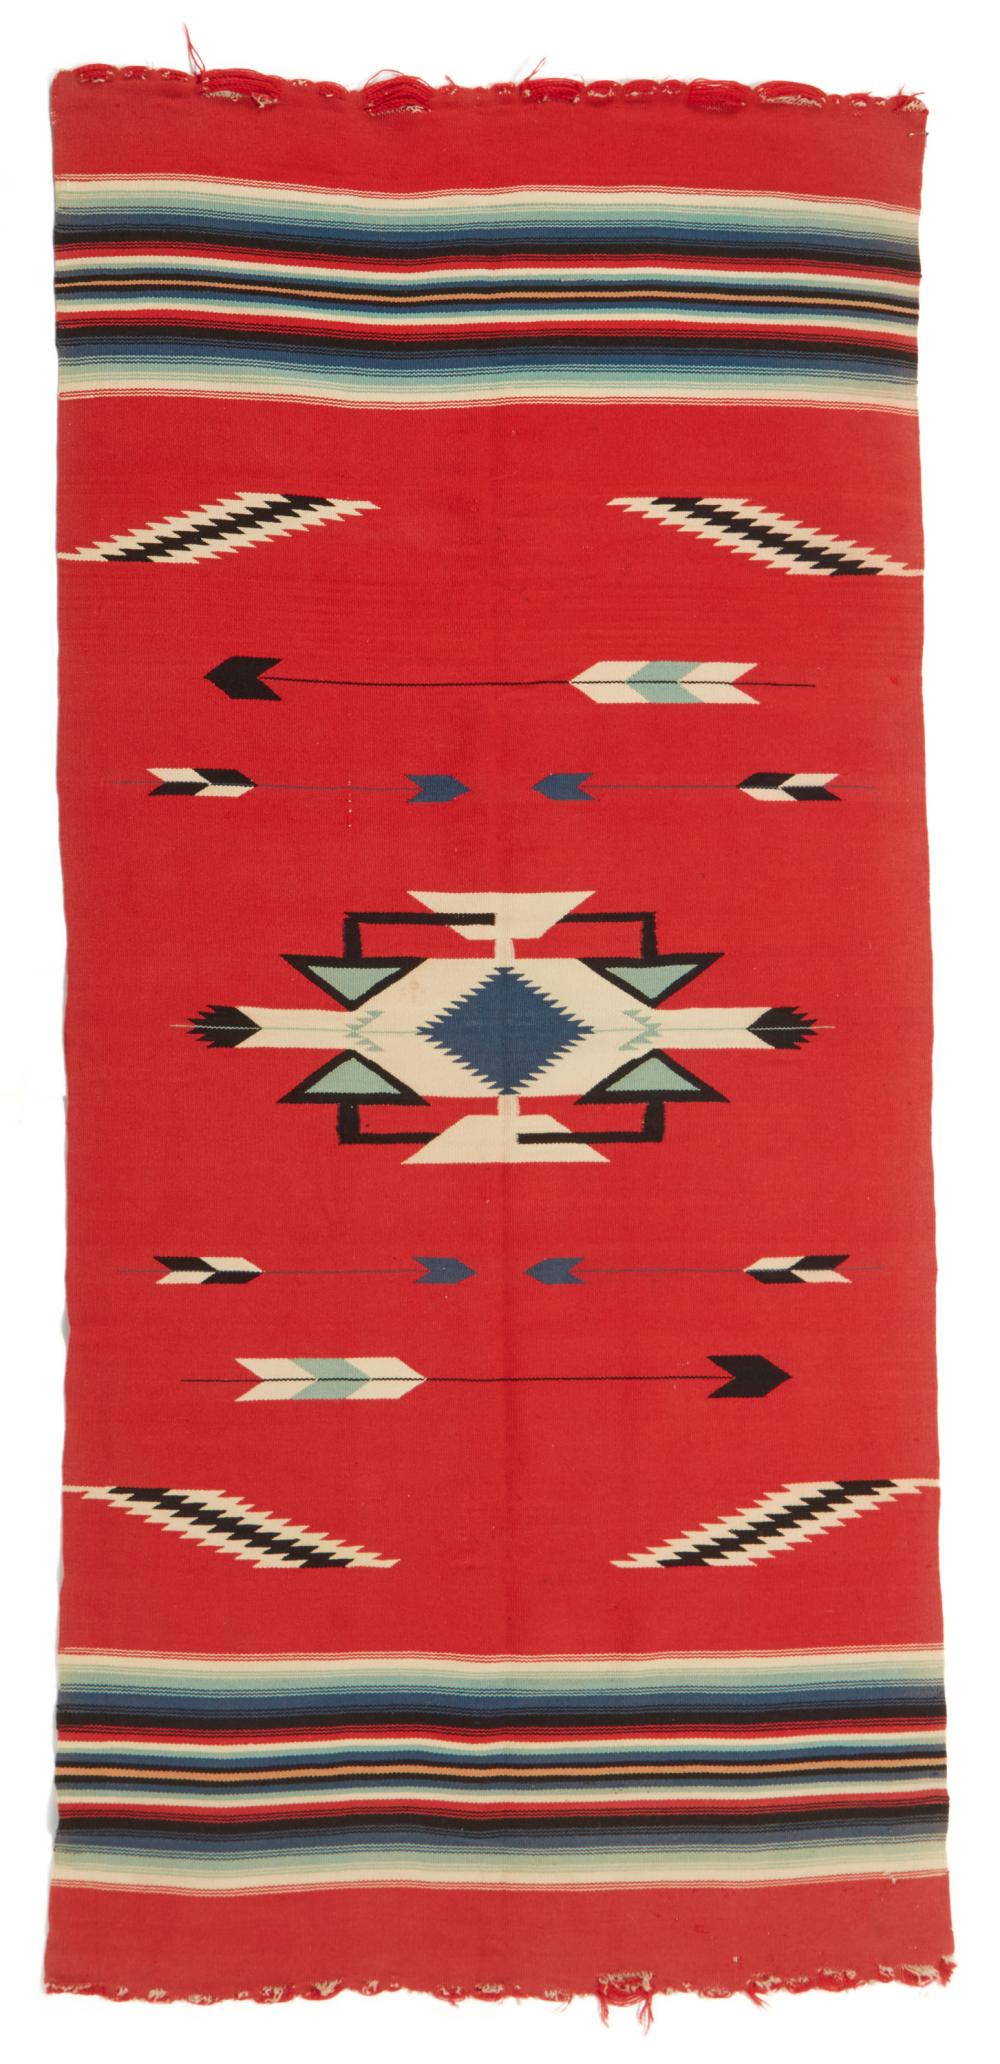 A CHIMAYO TEXTILEA Chimayo textile,